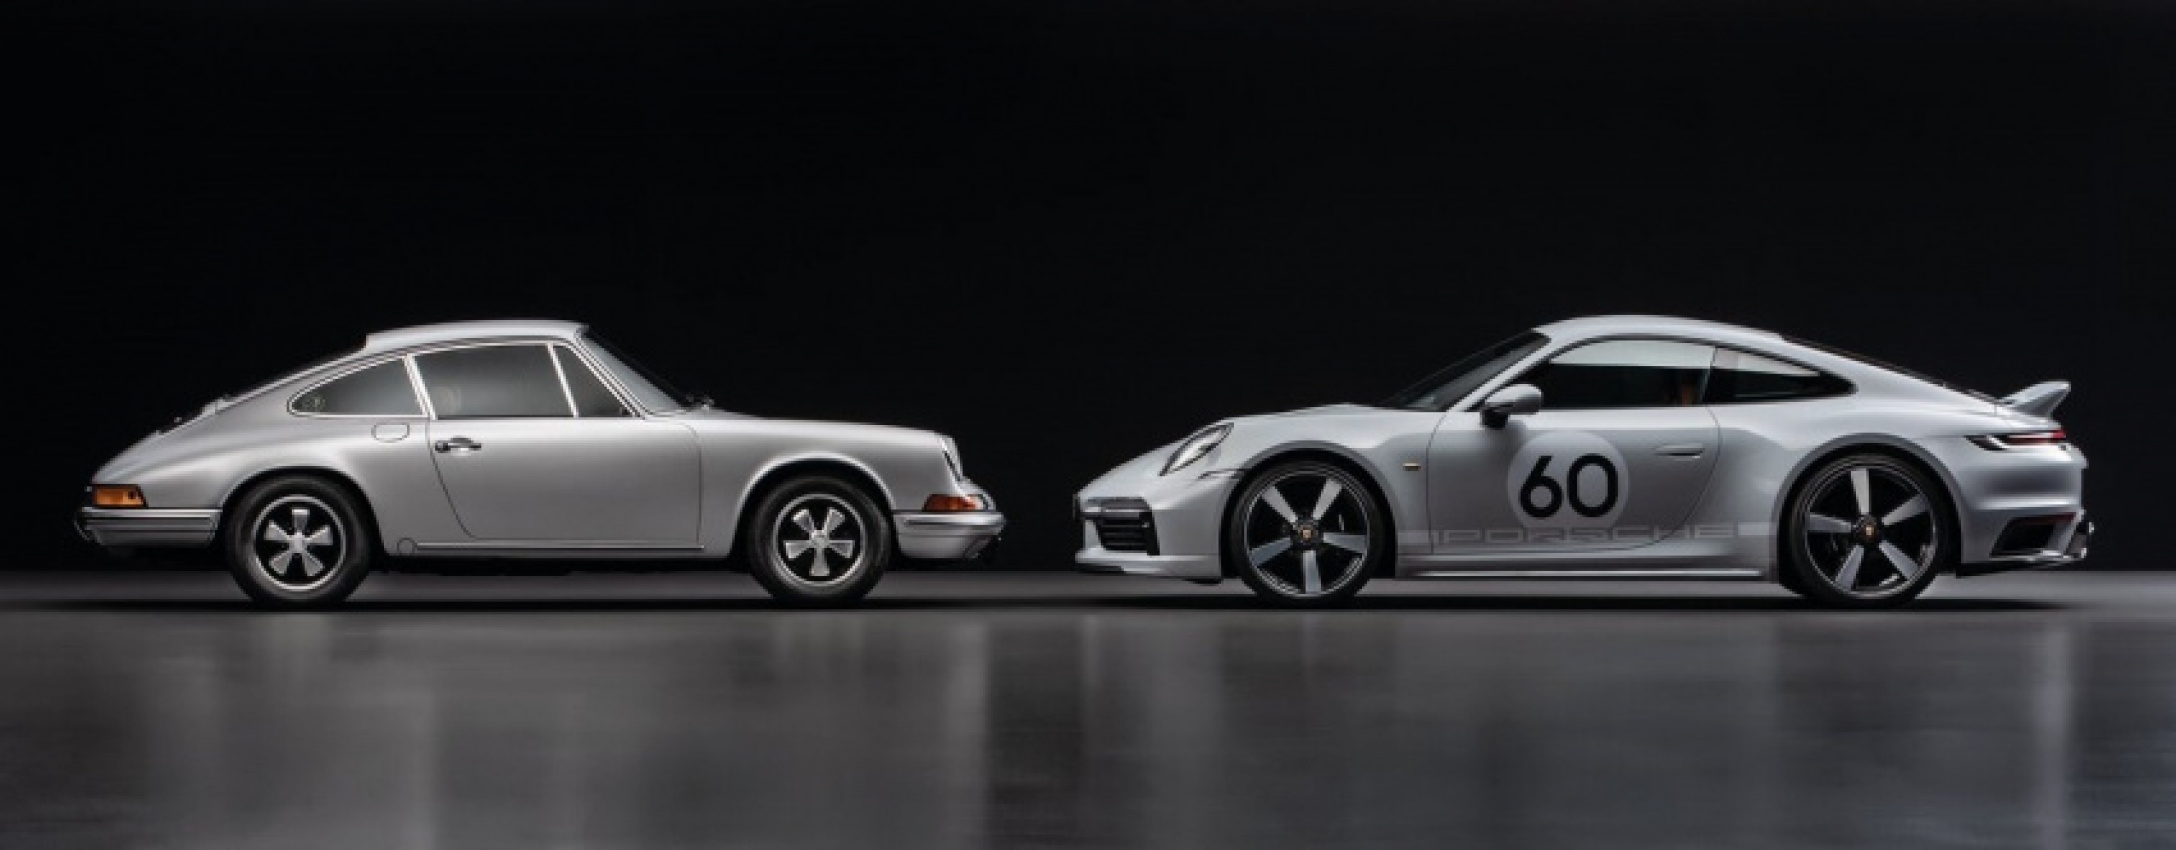 autos, car brands, cars, porsche, limited edition, porsche design, porsche exclusive manufaktur, porsche issues collection-worthy 911 sport classic